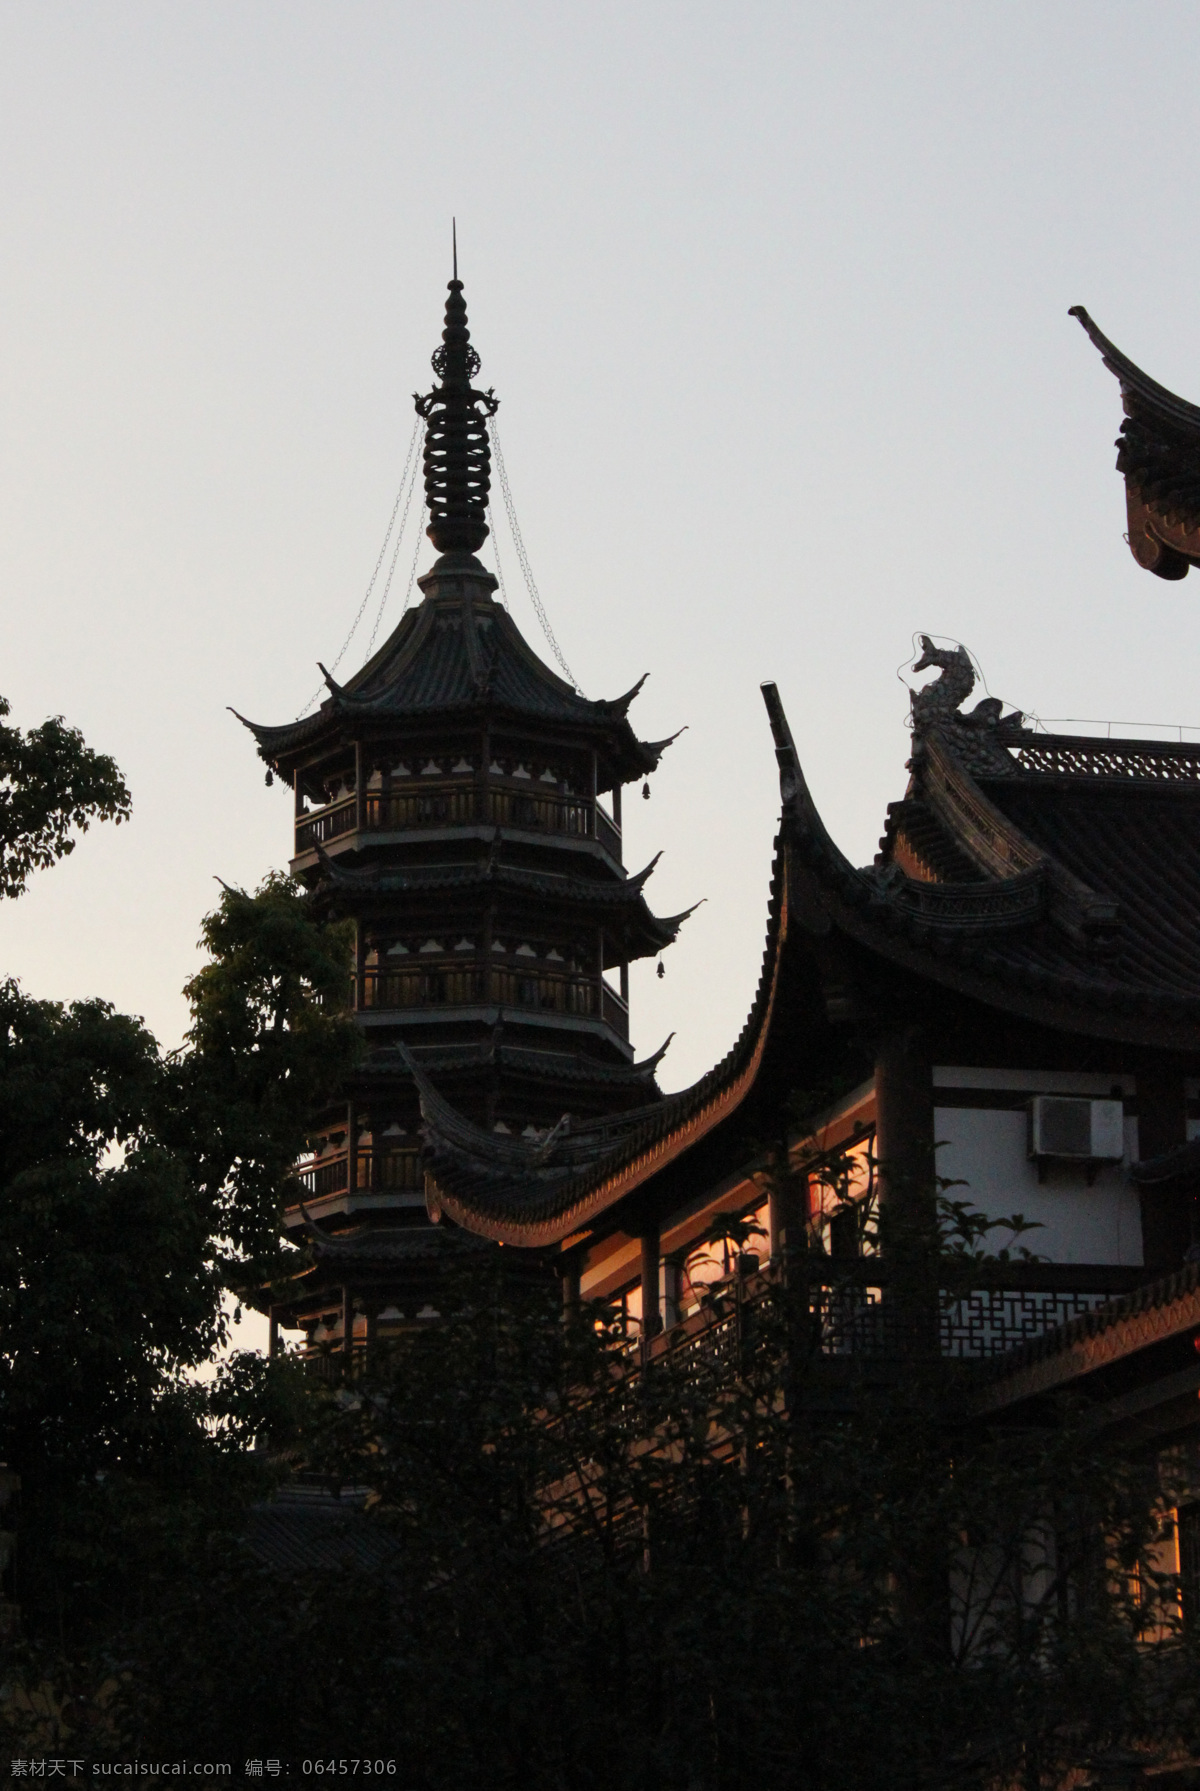 南禅寺 旅游摄影 国内旅游 无锡风景 园林建筑 古寺